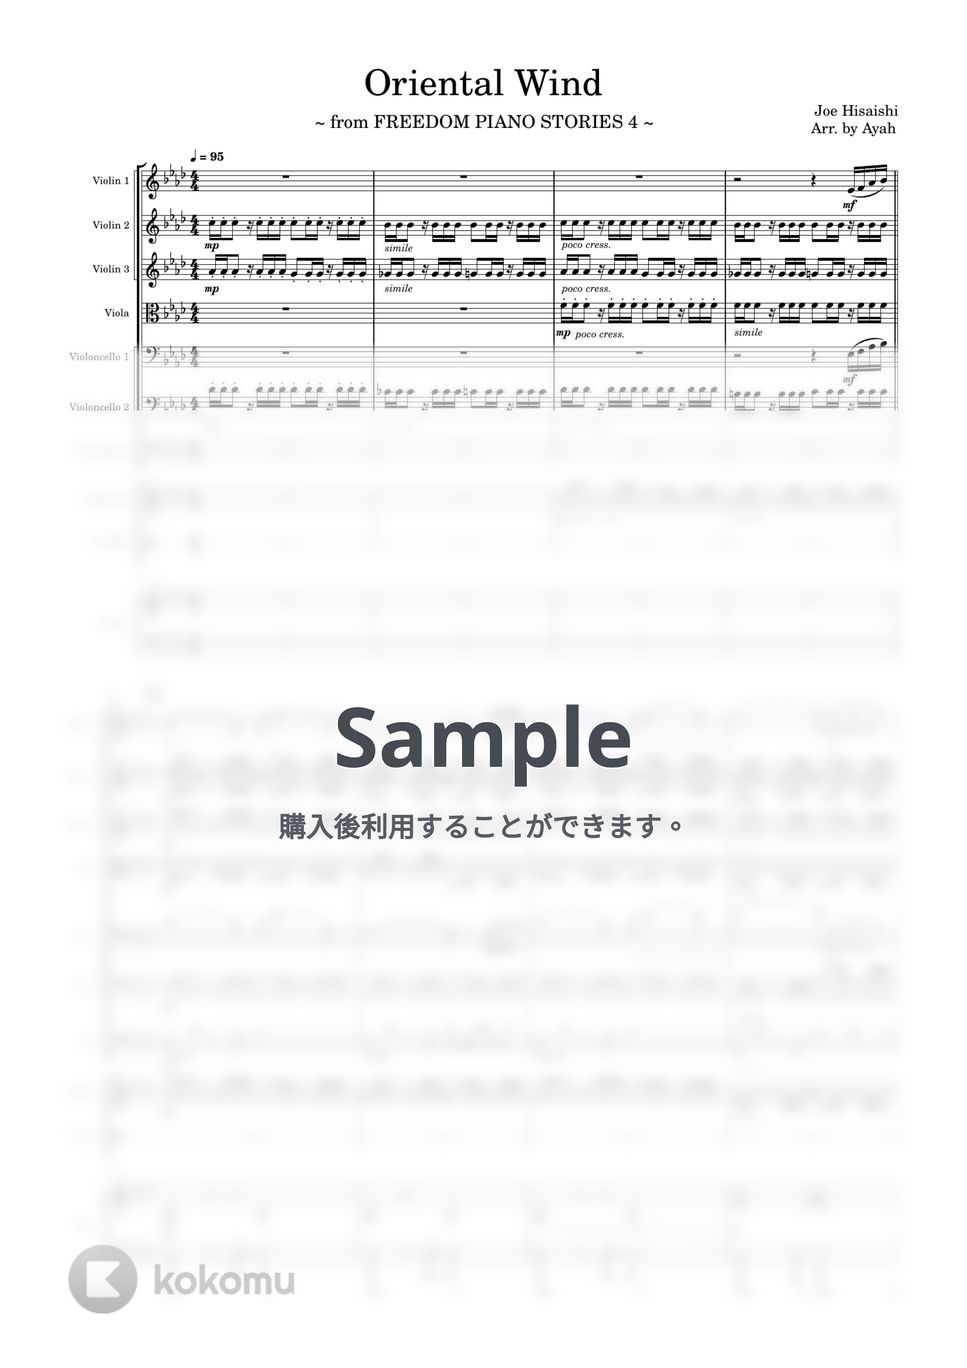 久石譲 - Oriental Wind (FREEDOM PIANO STORIES 4 / Strings Ensemble with Piano and Percussion) by 夕立後の茜と薄明